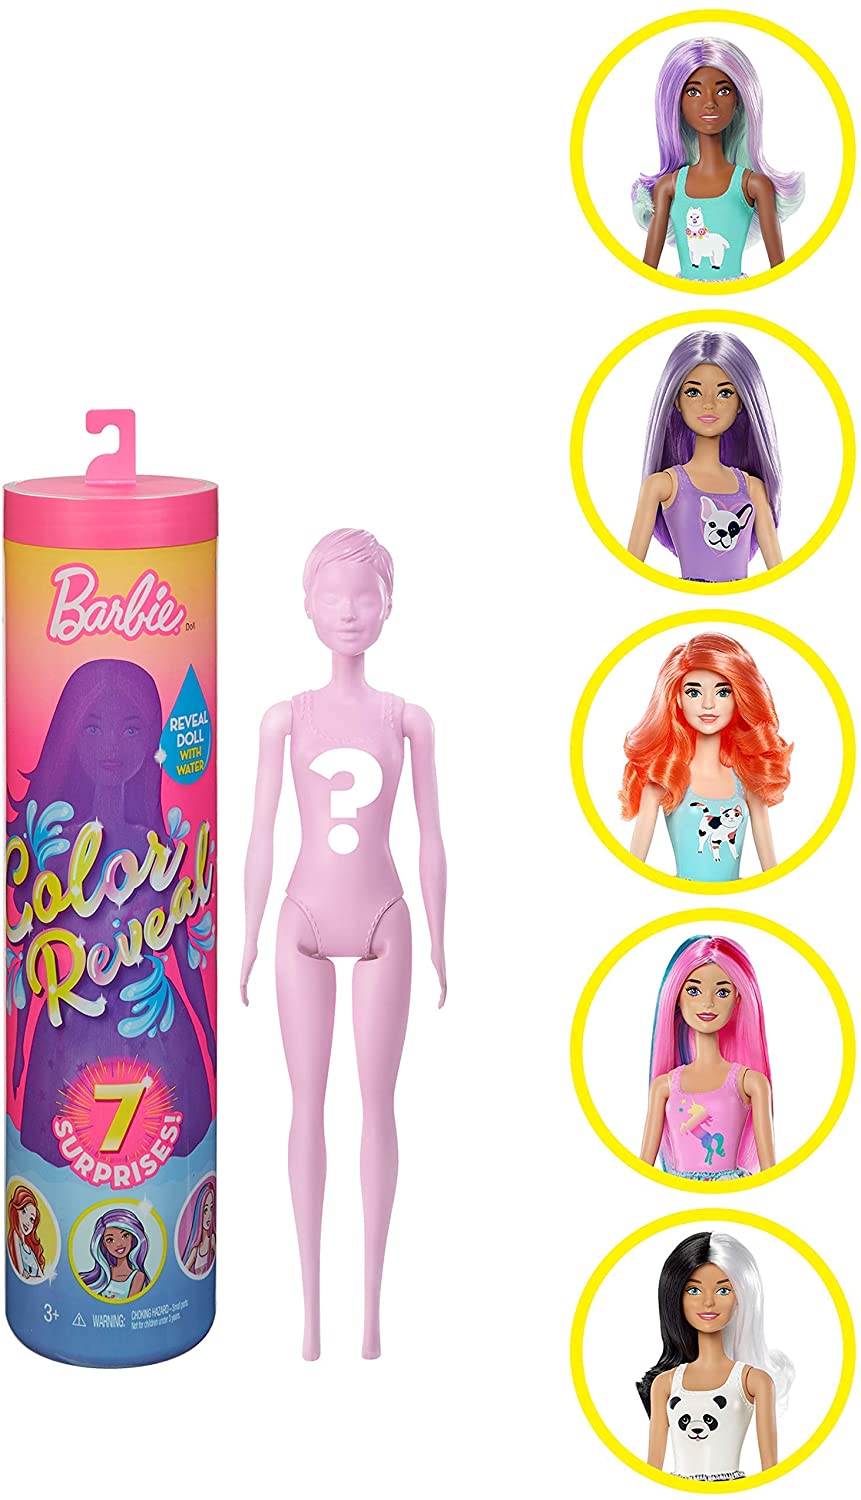 Barbie GMT48 - Color Reveal Assortimento a Sorpresa, Vestito e Acconciatura, Giocattolo per Bambini 3+ Anni, Modelli Asortiti